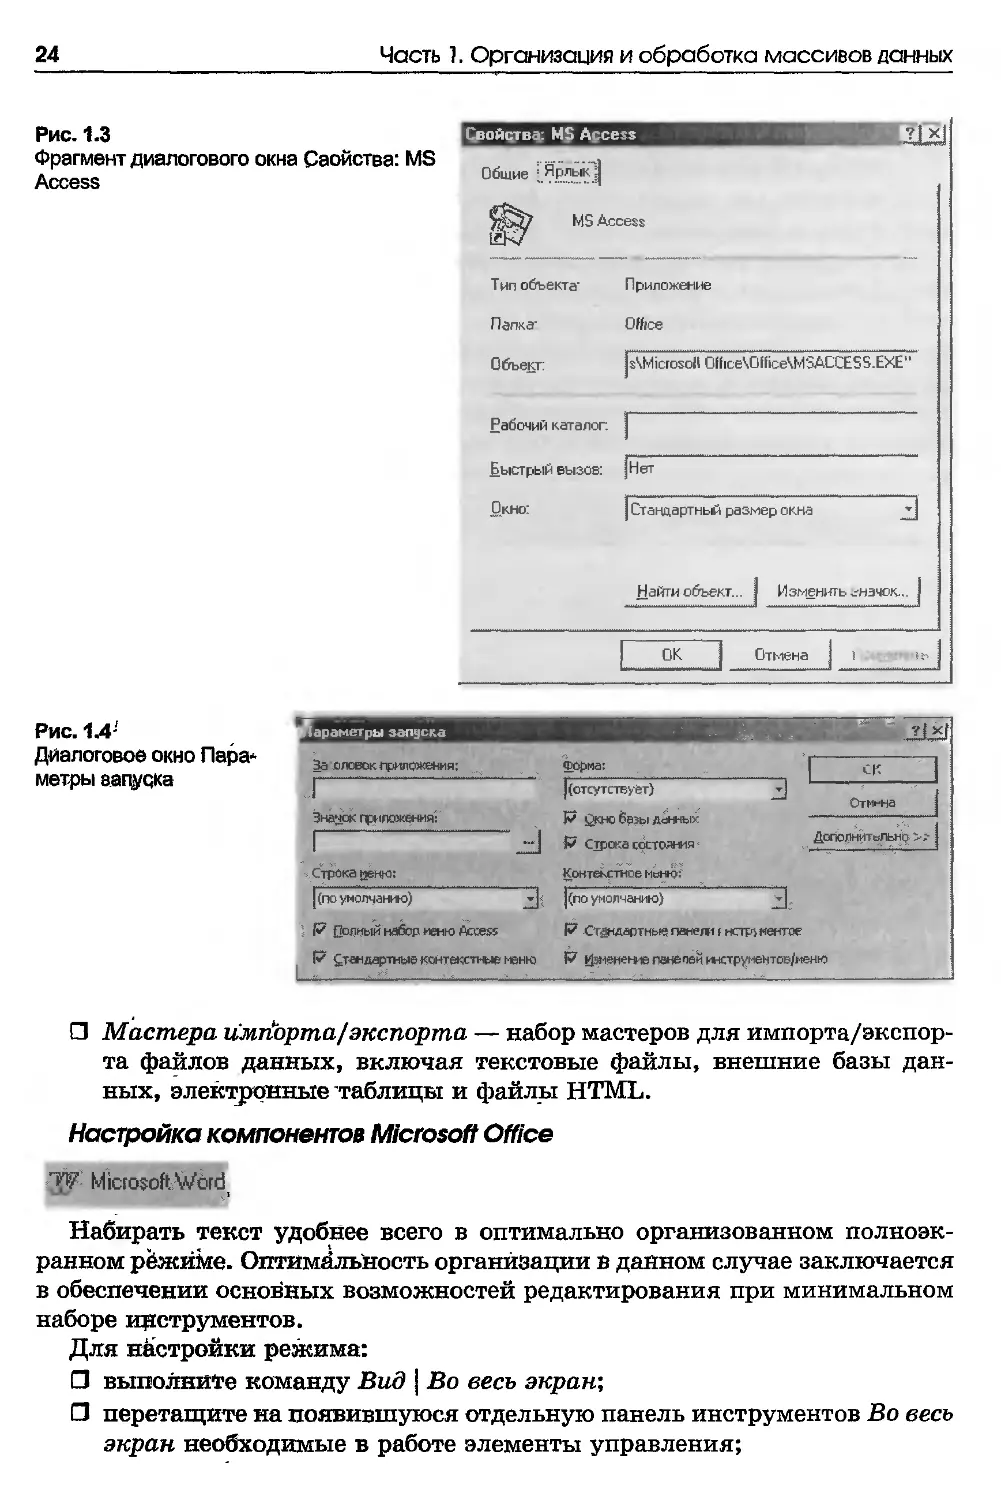 Настройка компонентов Microsoft Office